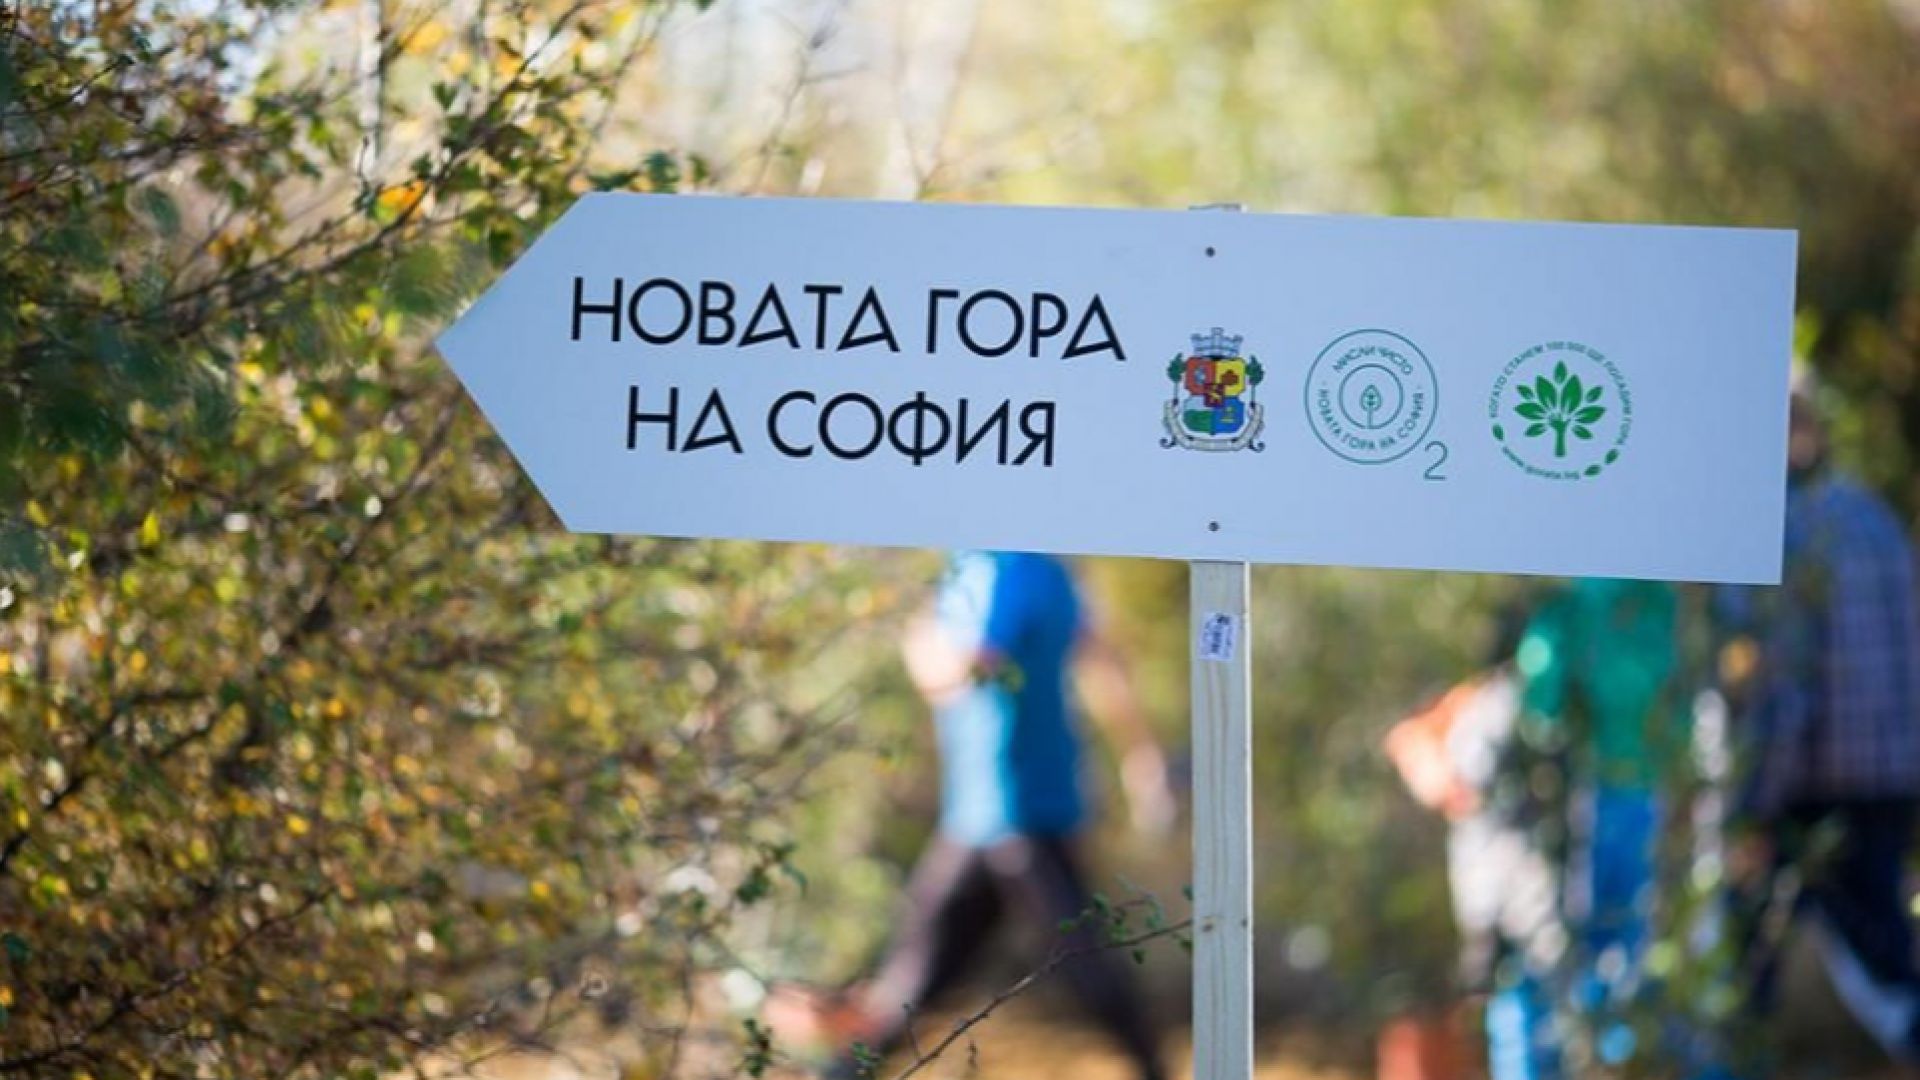 Над 80 000 млади фиданки вече растат в Новата гора на София